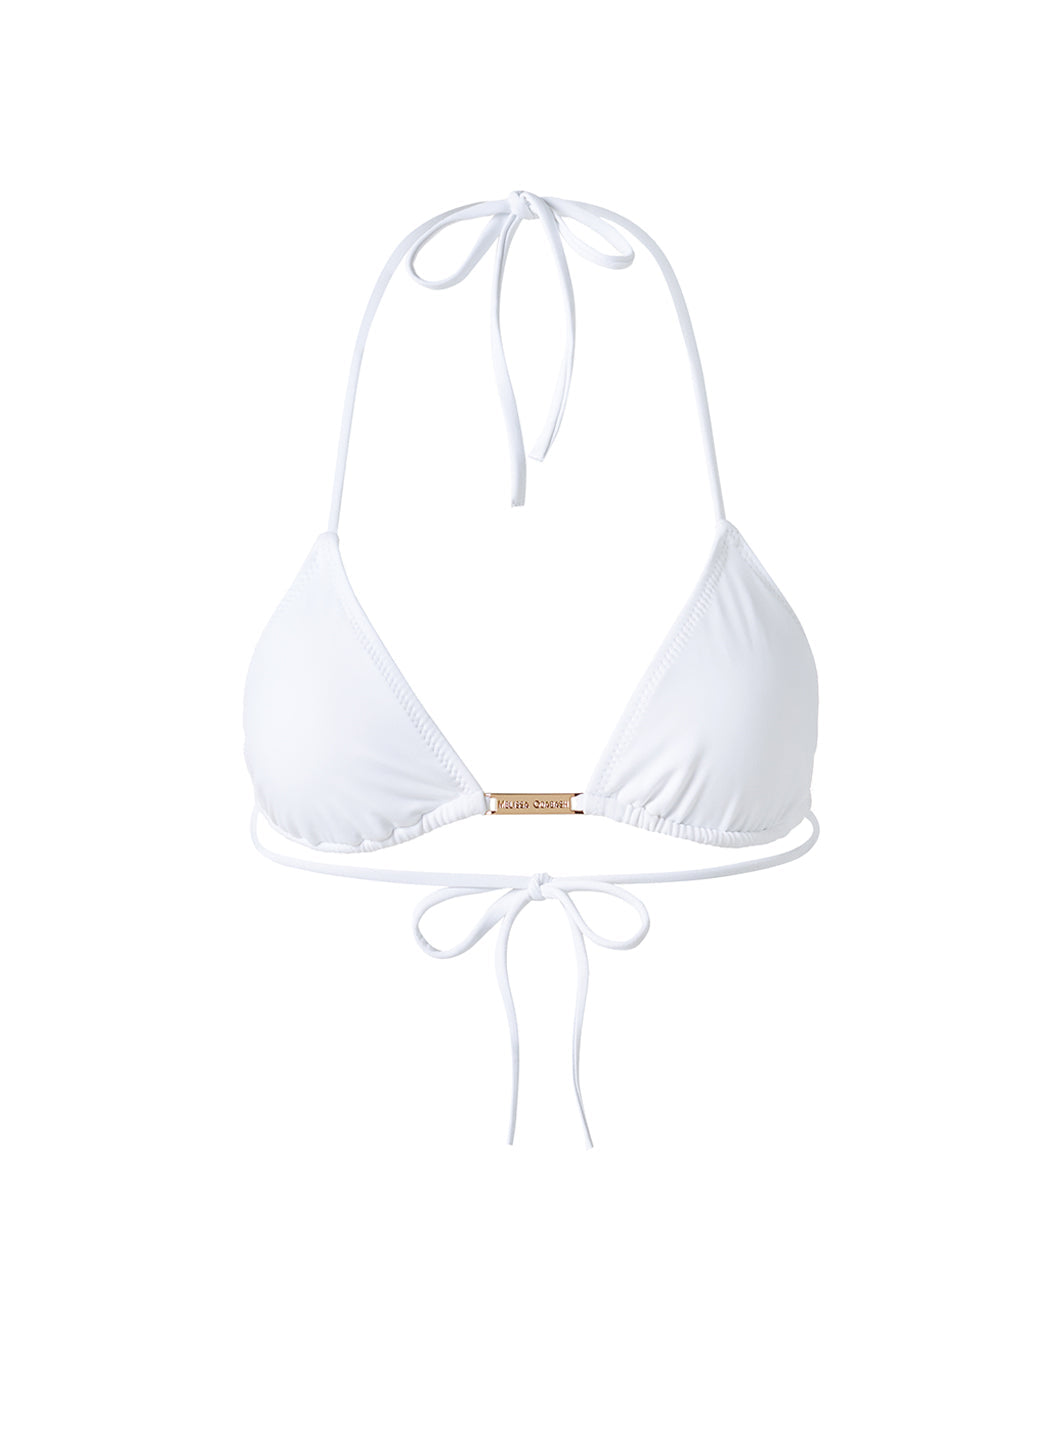 Andorra White Bikini Top